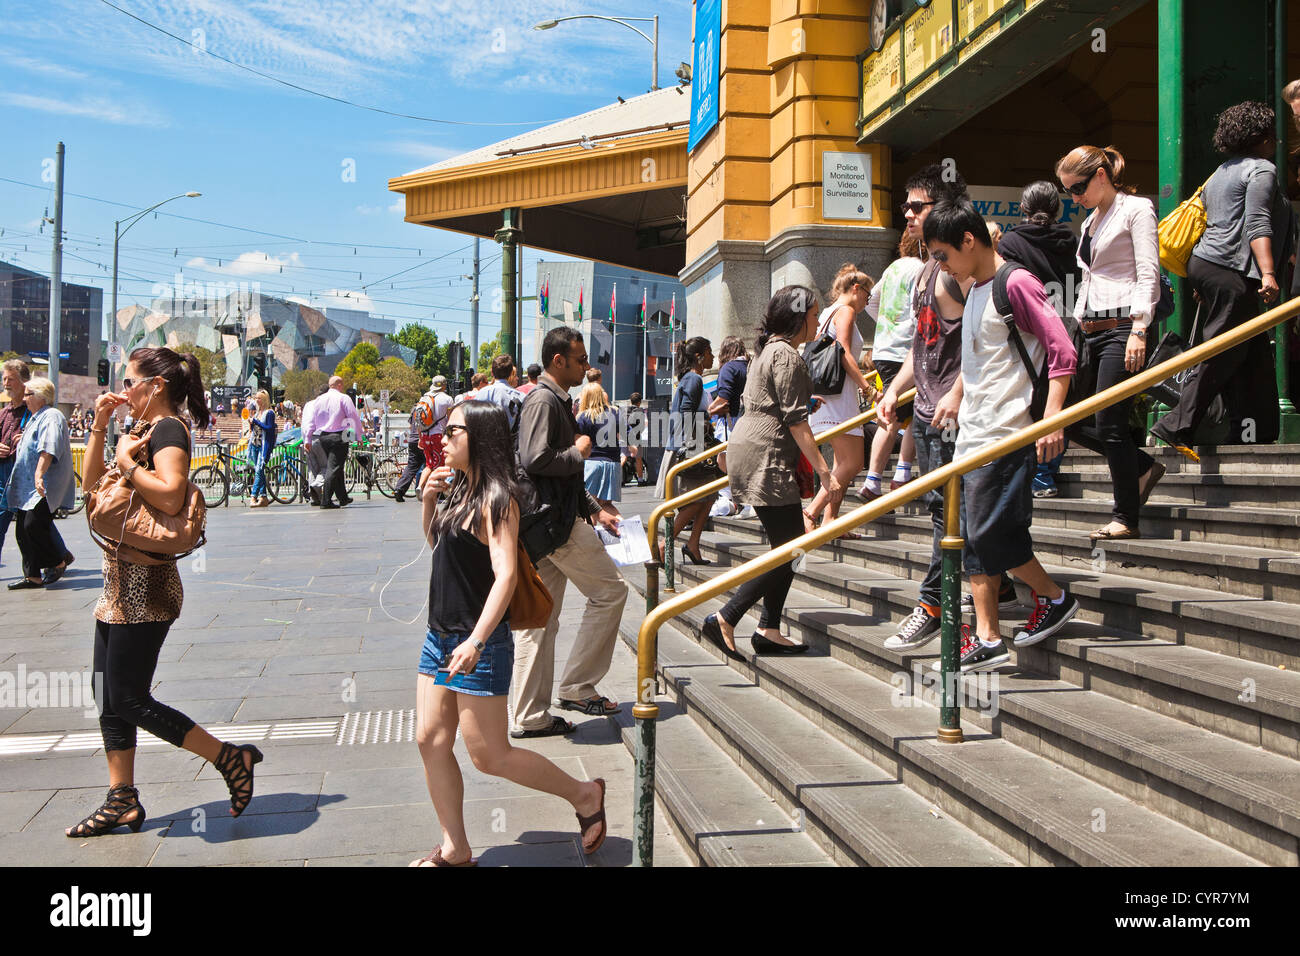 La célèbre gare de Flinders Street sur Swanston Street Melbourne Victoria Australia avec des foules de gens dans les rues. Banque D'Images